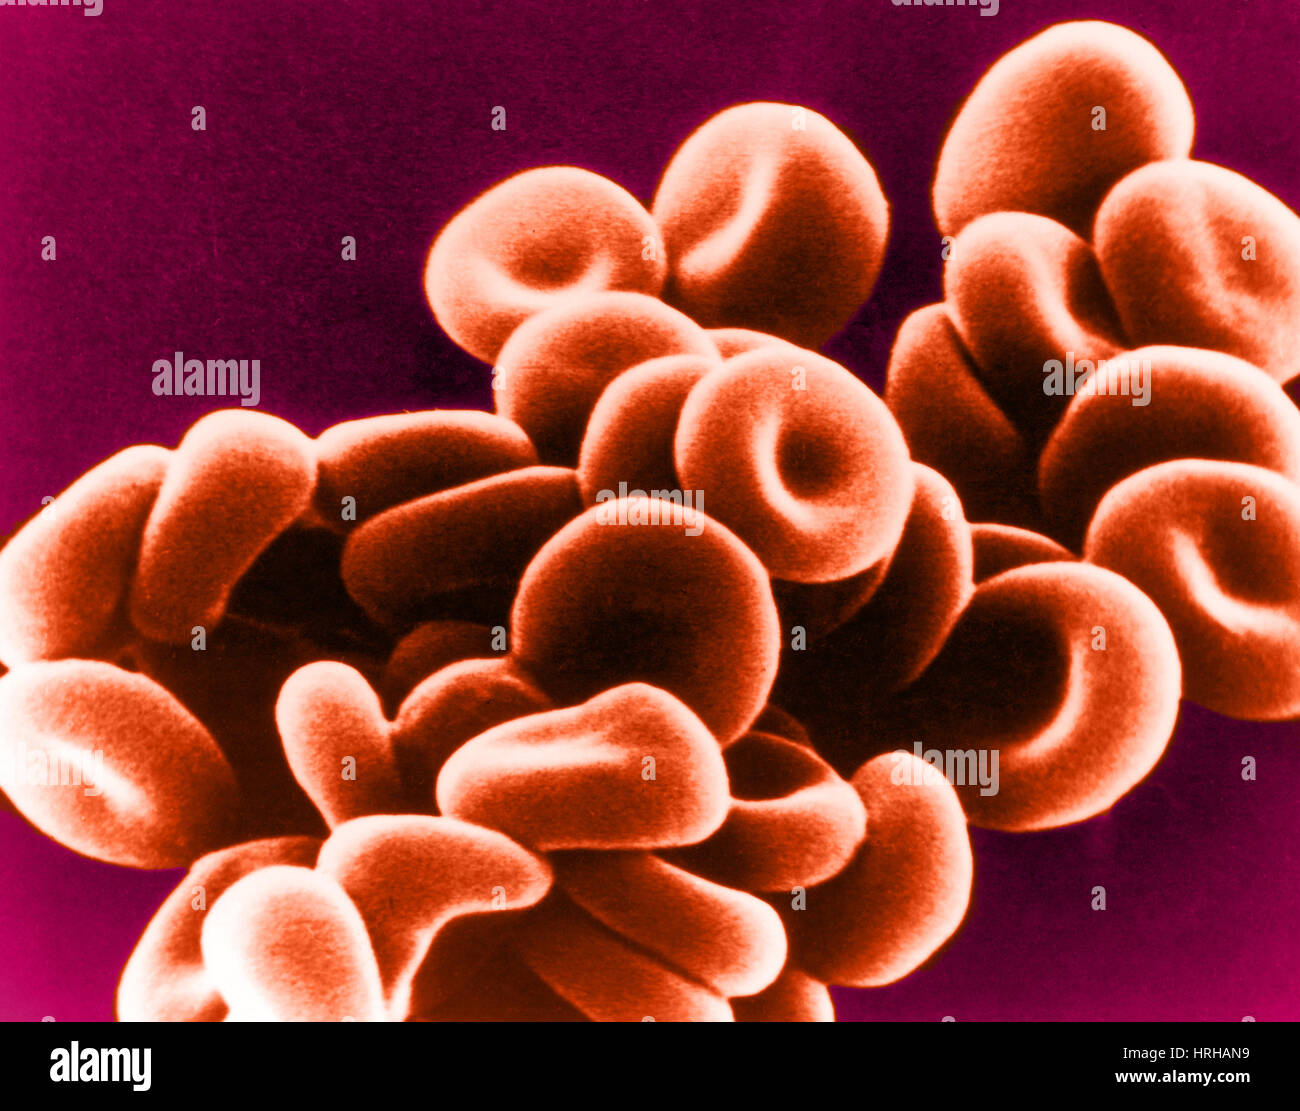 SEM delle normali cellule rosse del sangue negli ovini Foto Stock